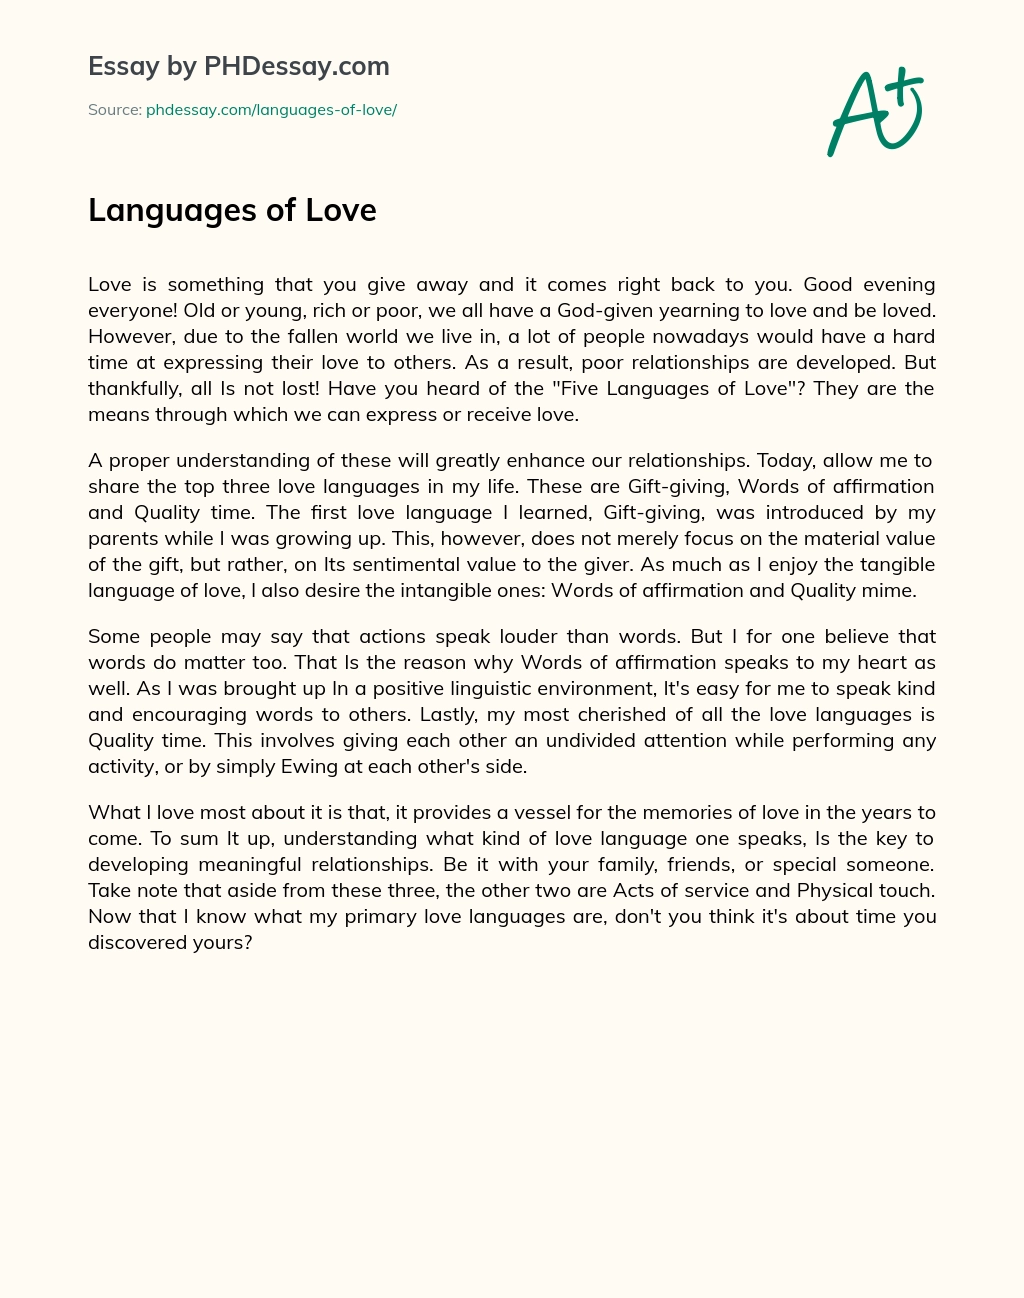 Languages of Love essay